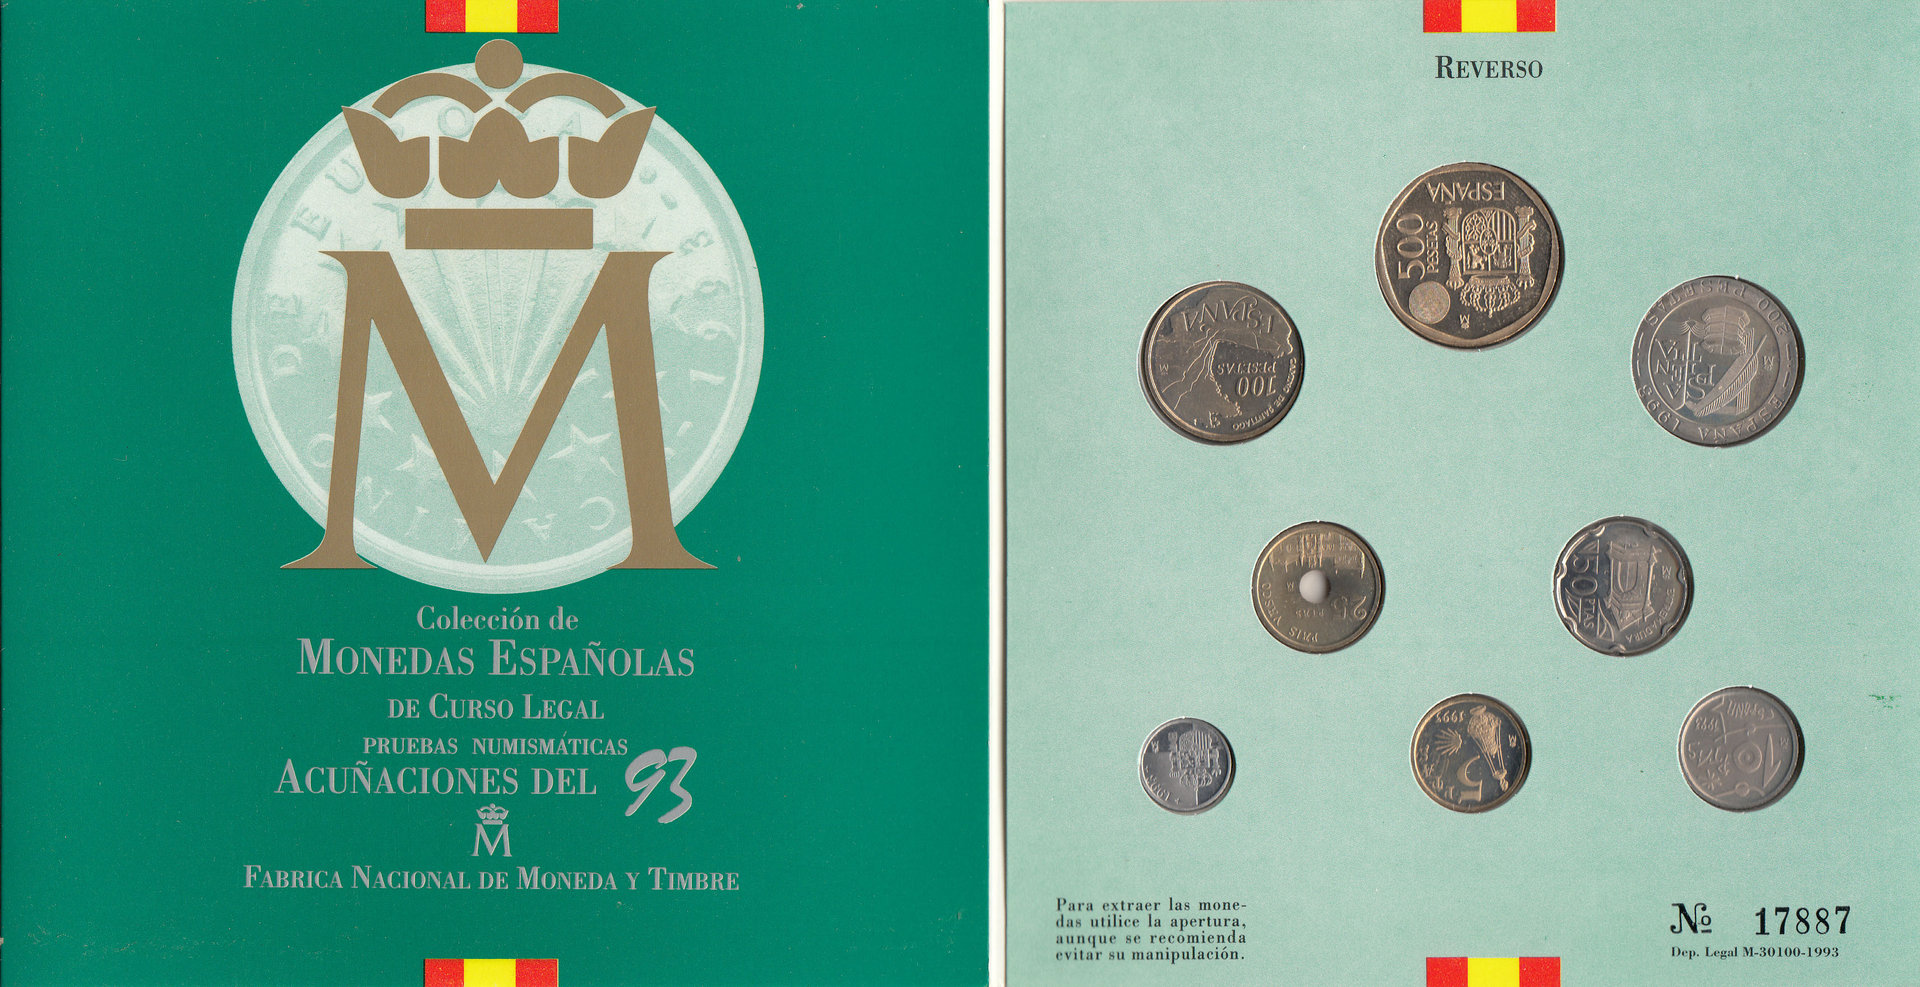 COLECCION DE MONEDAS ESPAÑOLAS DE CURSO LEGAL. ACUÑACIONES DE 1993.